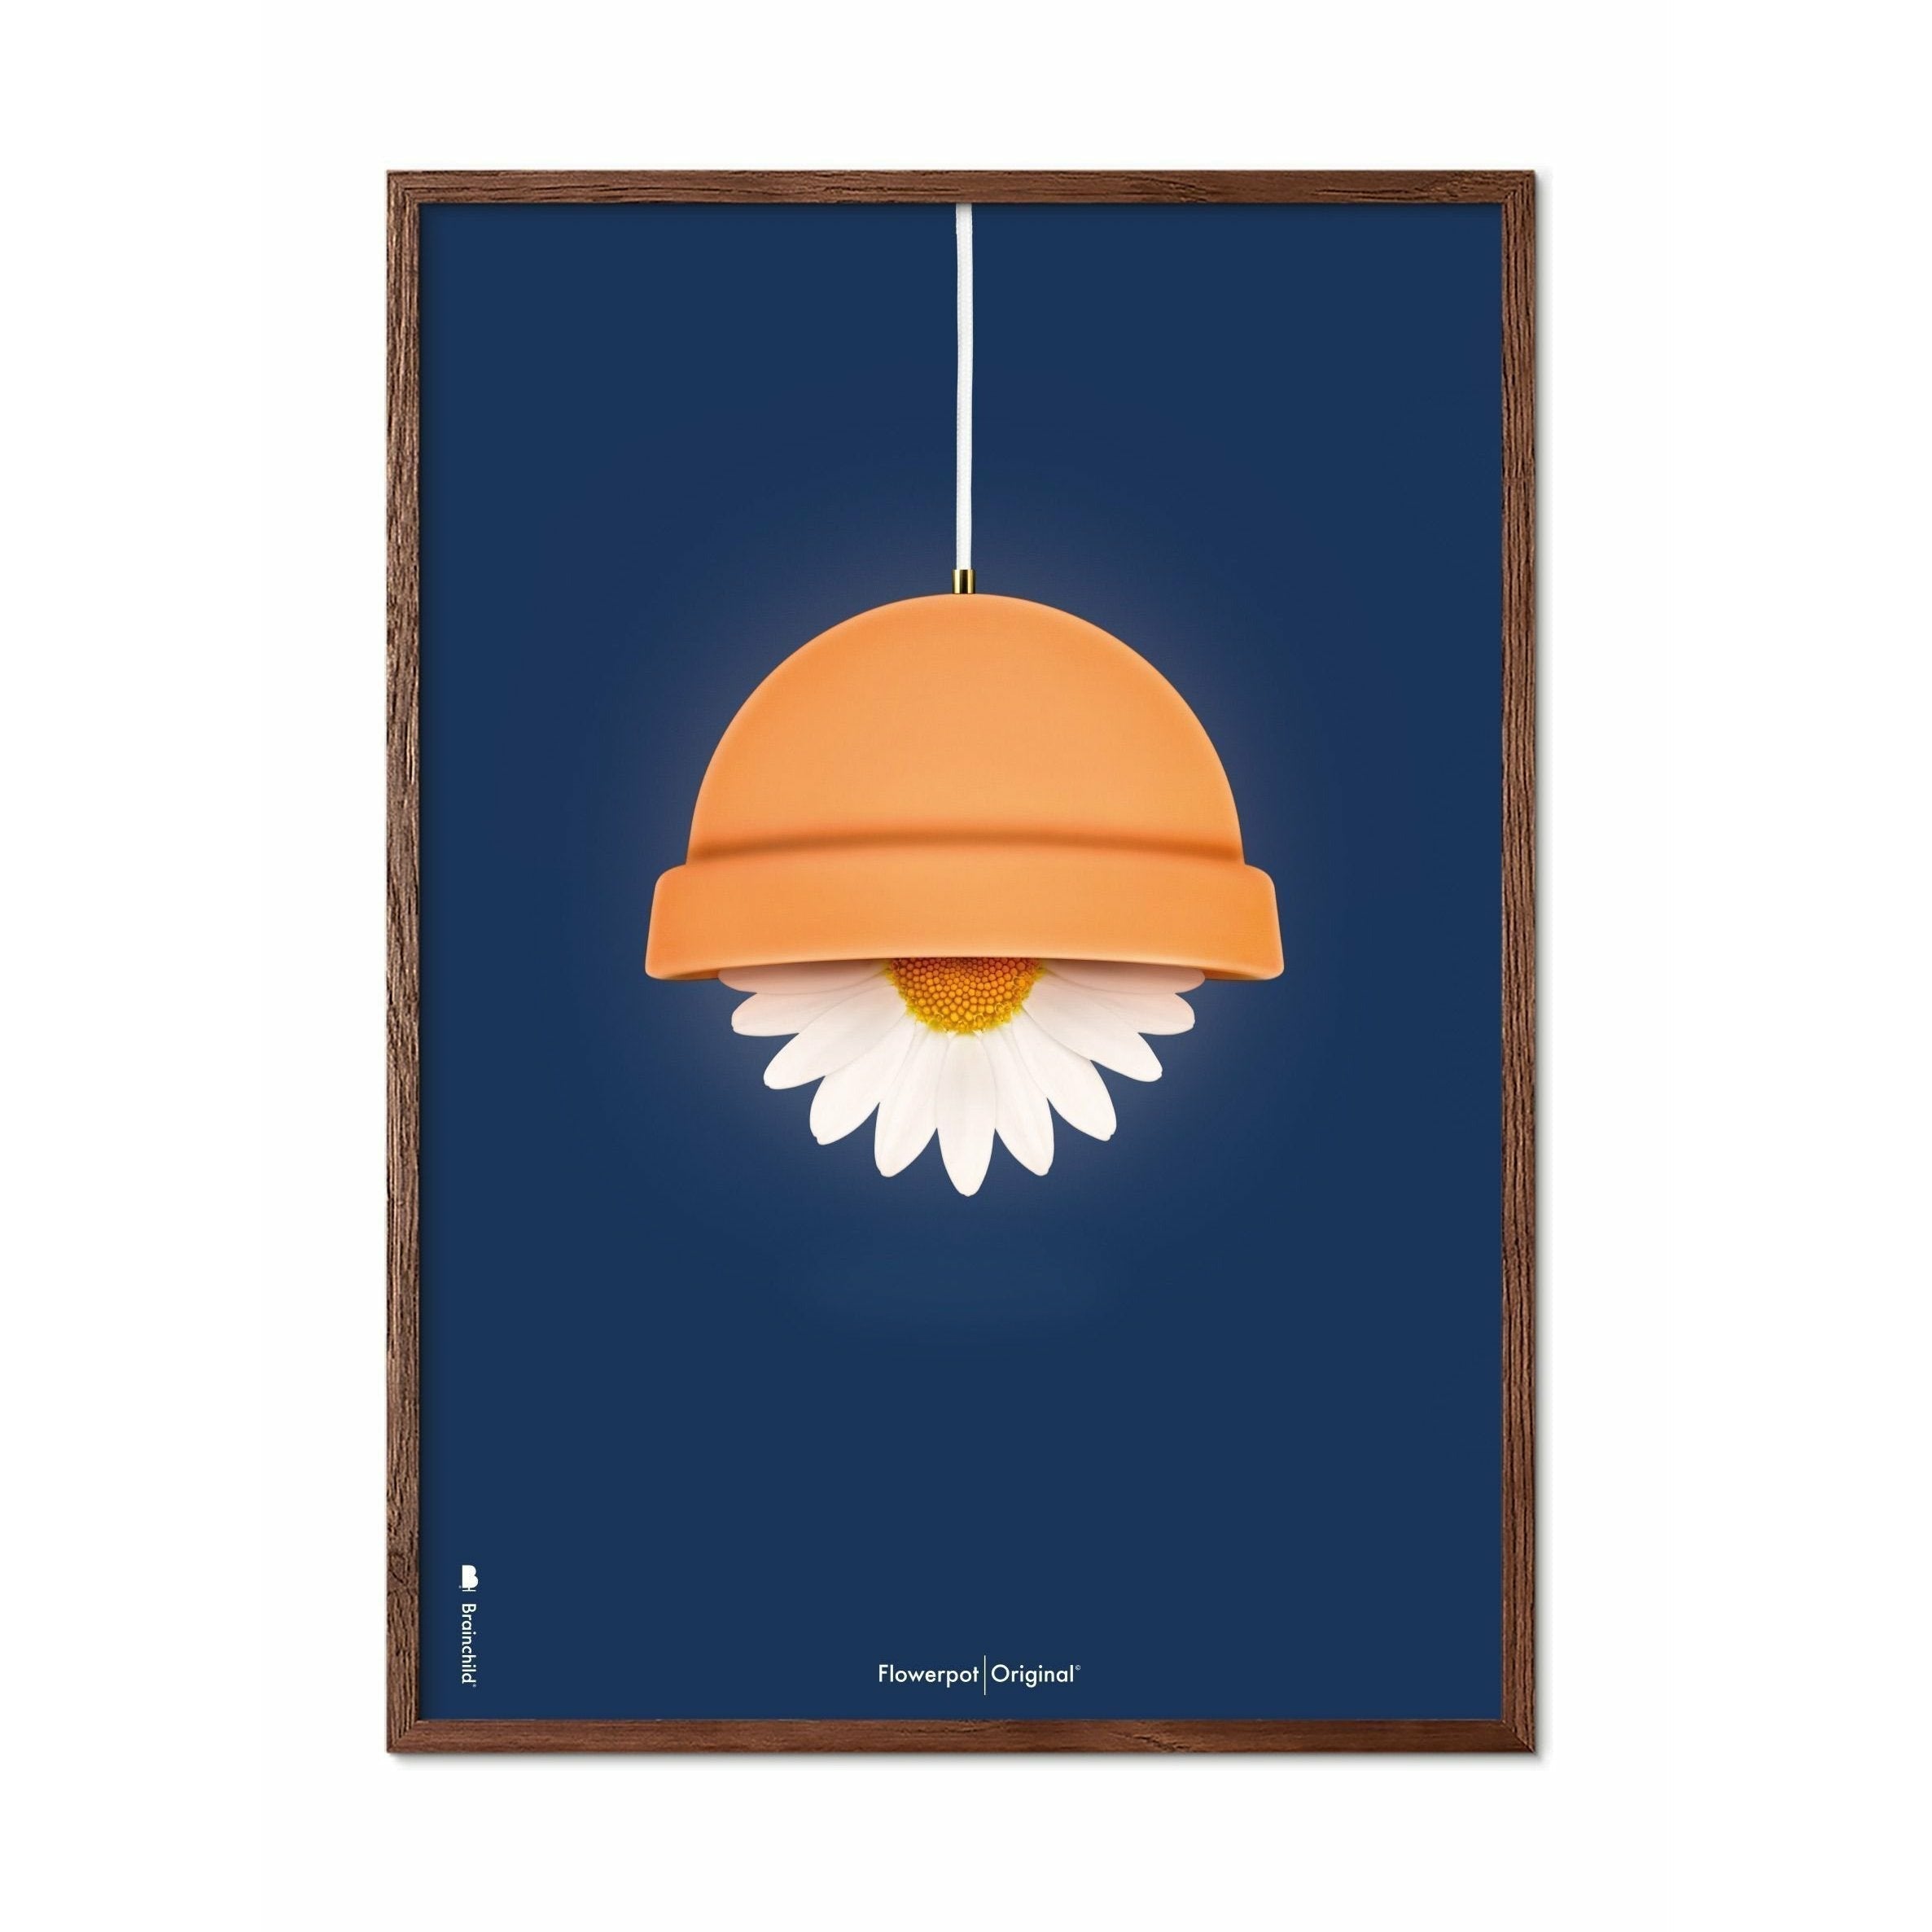 Brainchild Flowerpot Classic Poster, Dark Wood Frame 50x70 Cm, Dark Blue Background